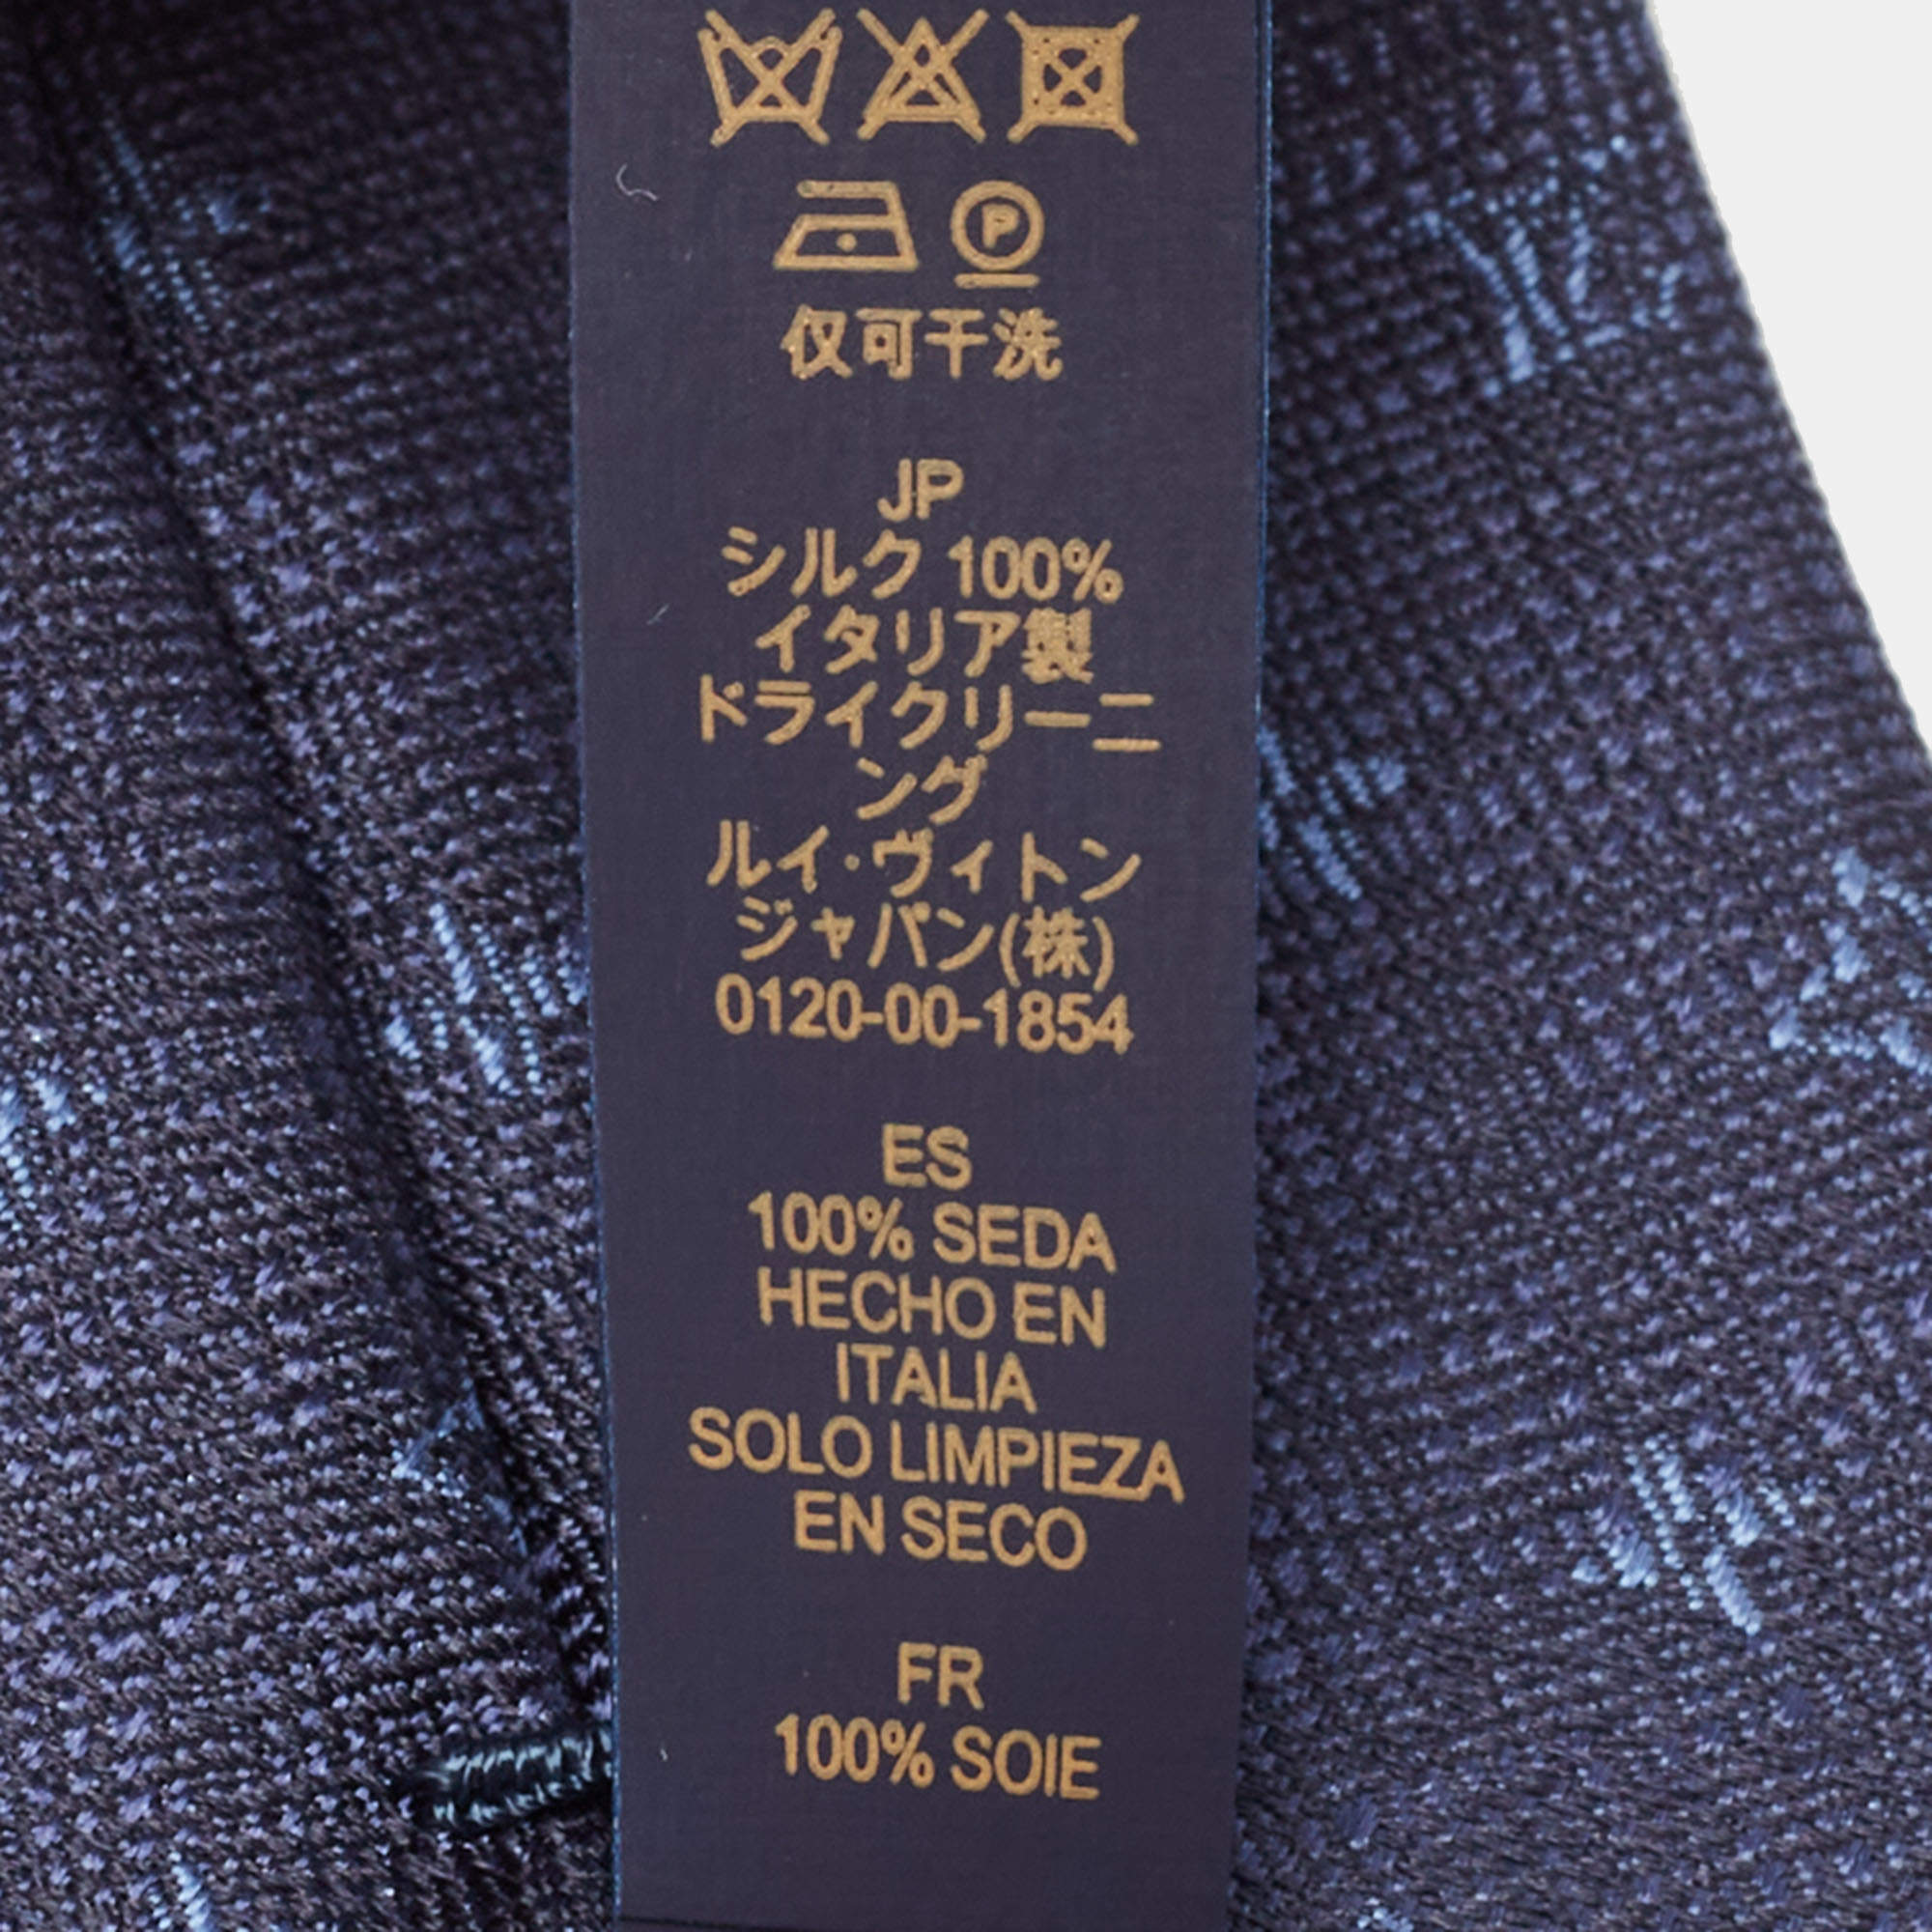 Silk tie Louis Vuitton Navy in Silk - 31363668